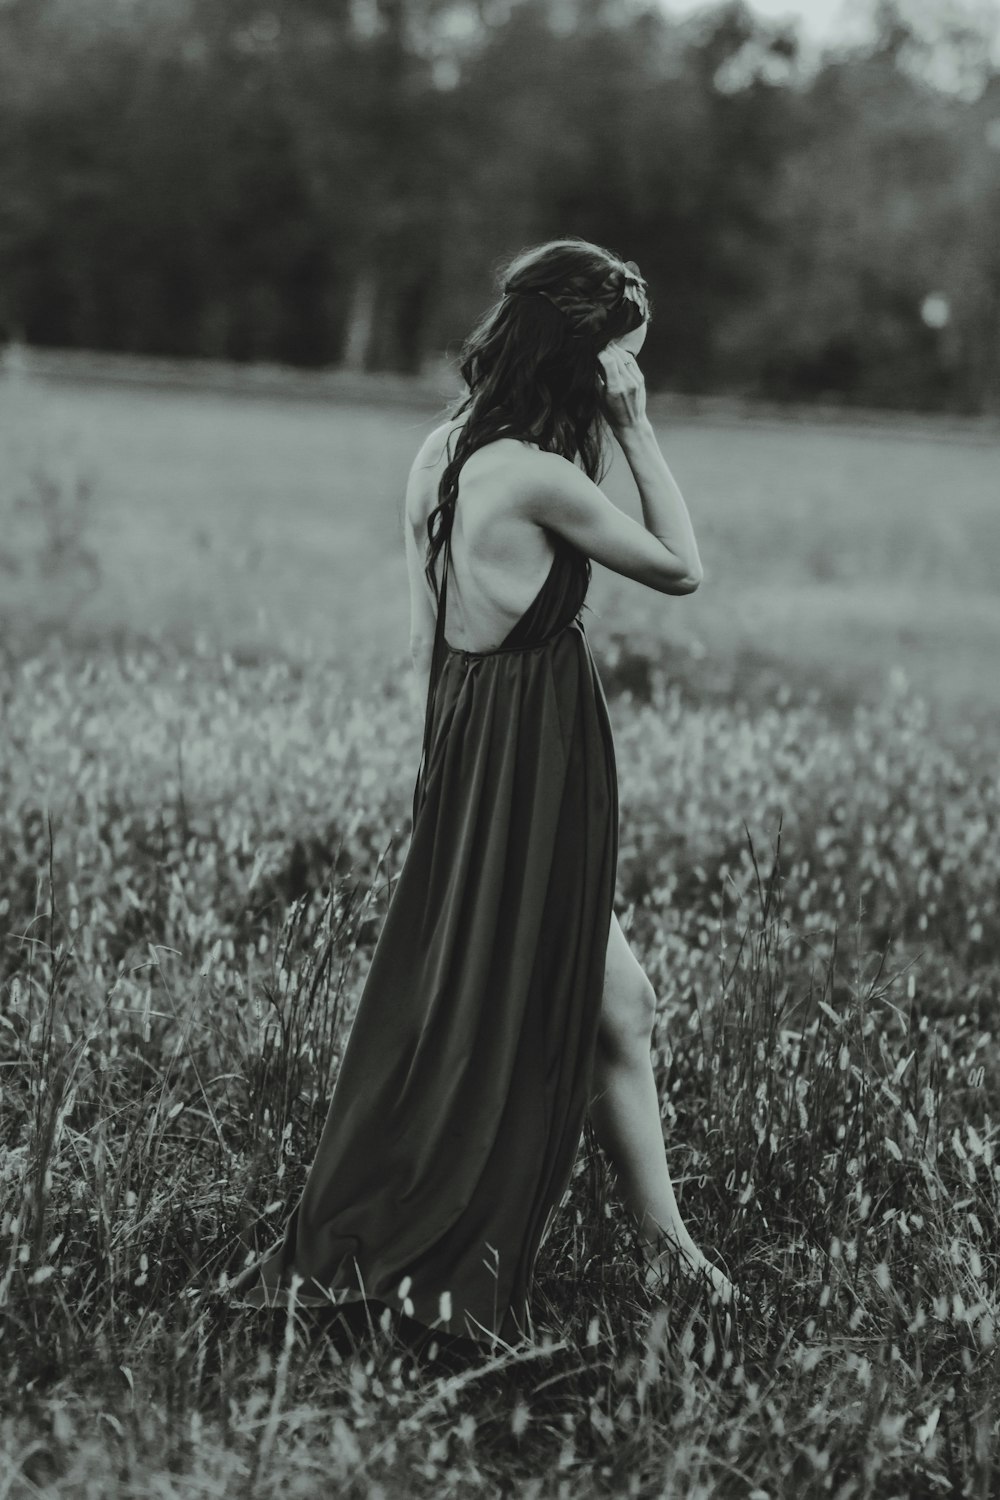 fotografia in scala di grigi di donna che indossa un vestito sul campo d'erba mentre è in piedi